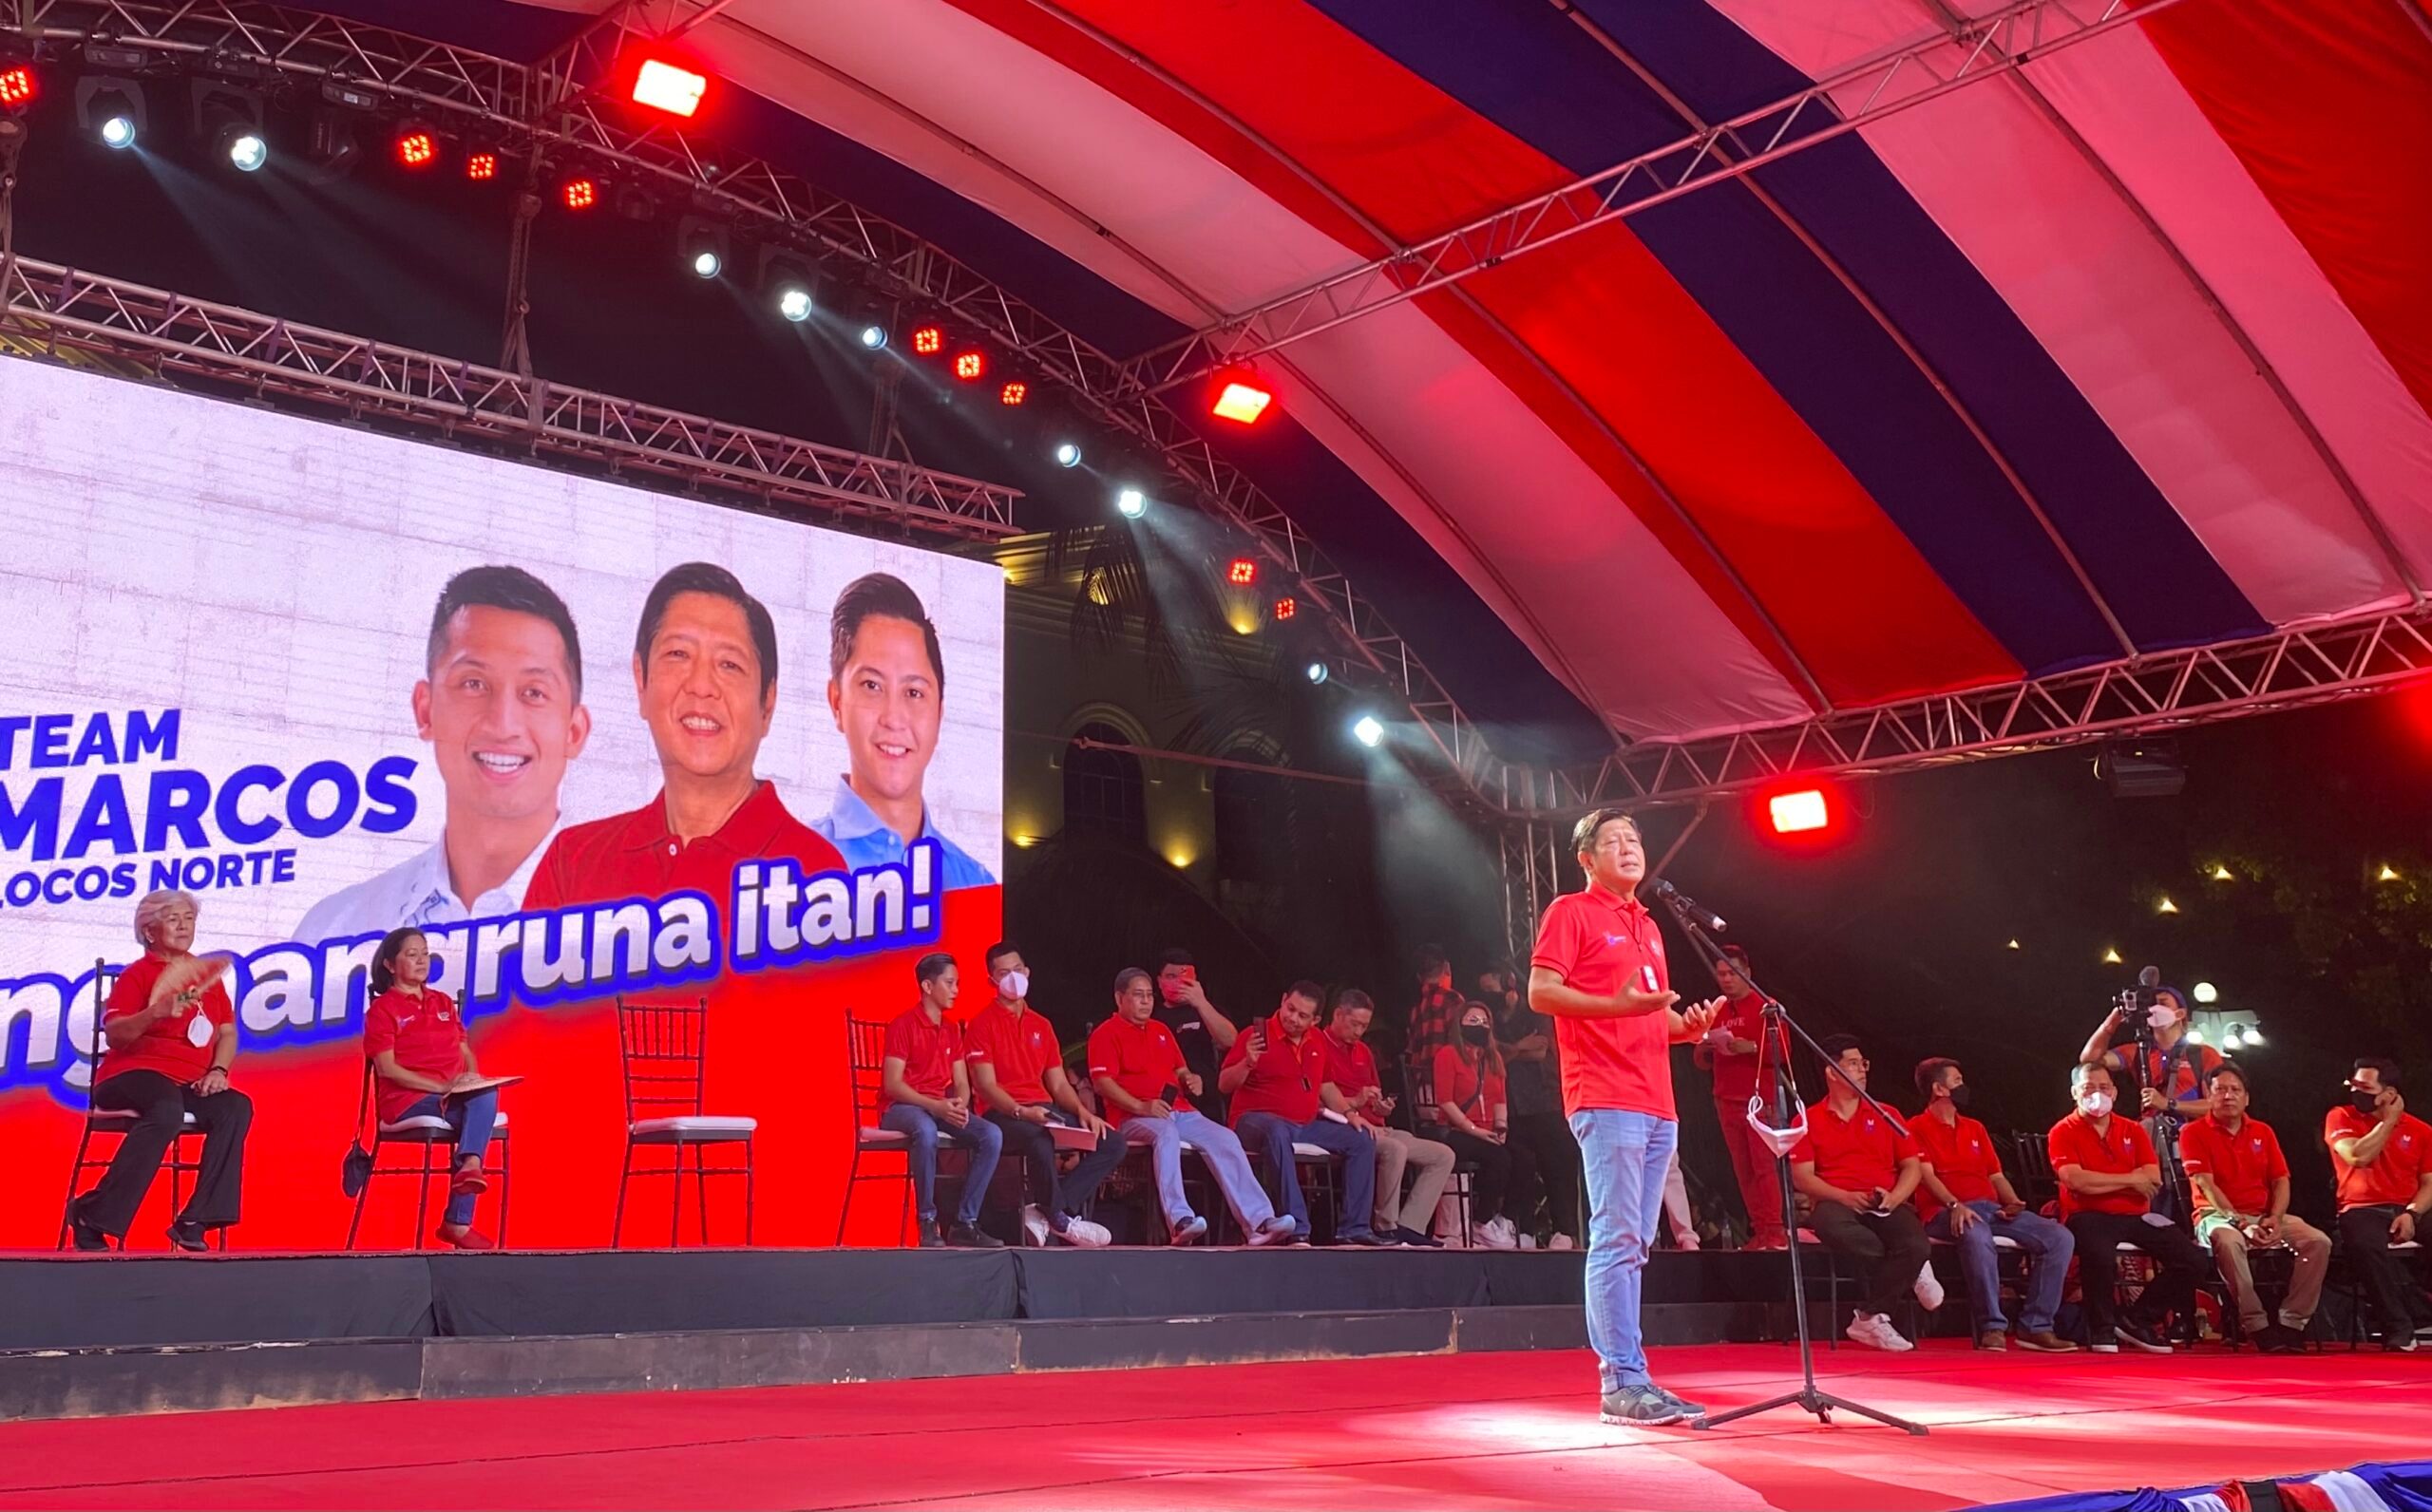 Marcos is set to win big in home turf Ilocos Norte